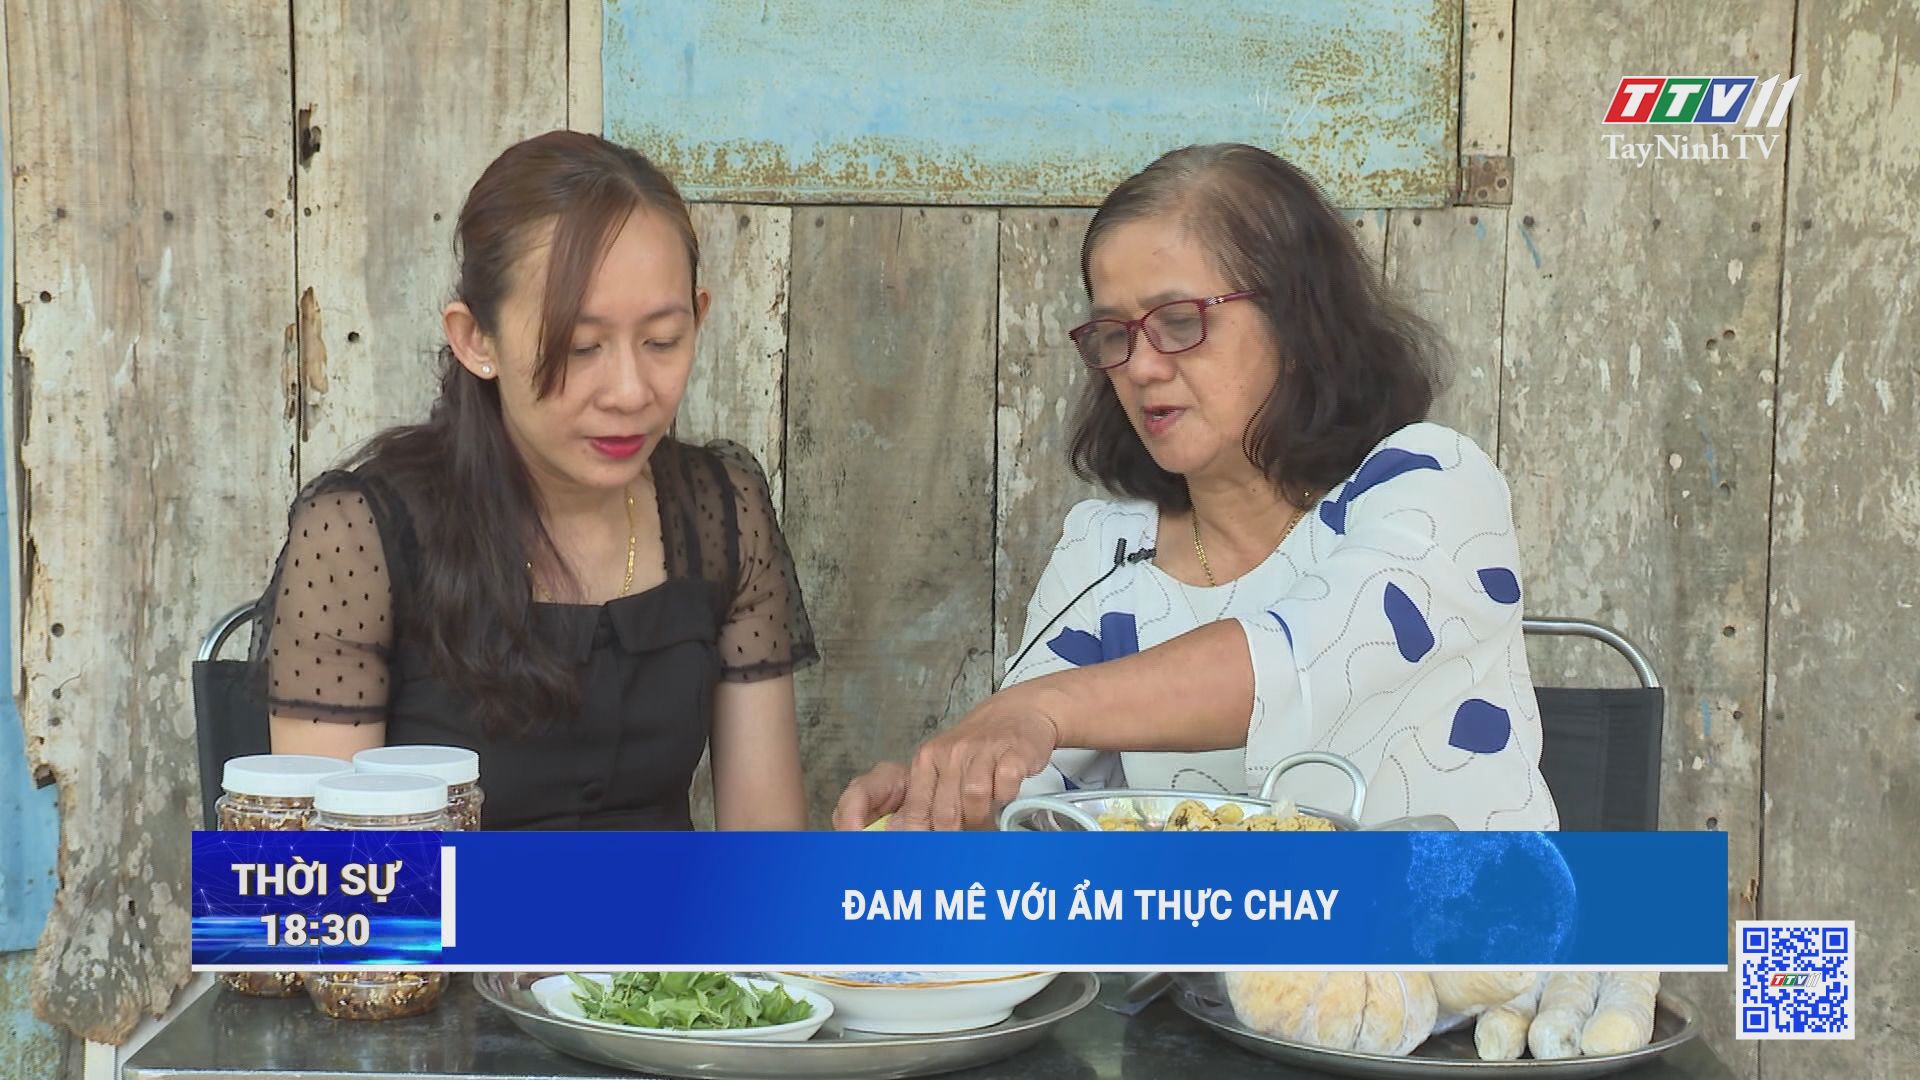 Đam mê với ẩm thực chay | TayNinhTV